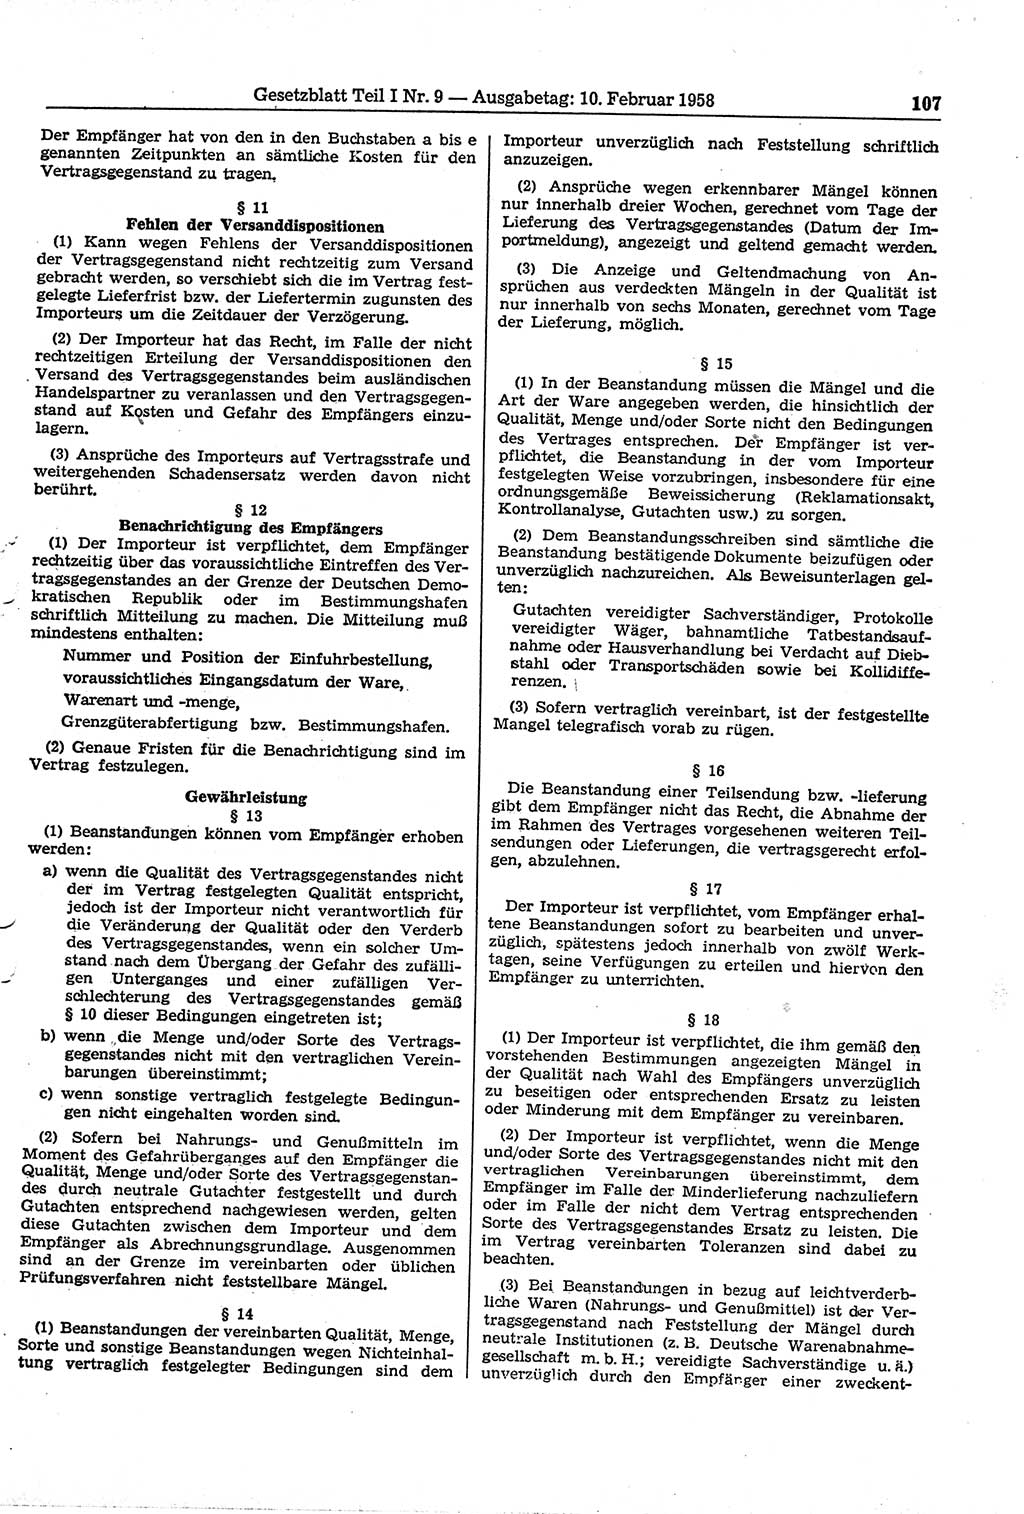 Gesetzblatt (GBl.) der Deutschen Demokratischen Republik (DDR) Teil Ⅰ 1958, Seite 107 (GBl. DDR Ⅰ 1958, S. 107)